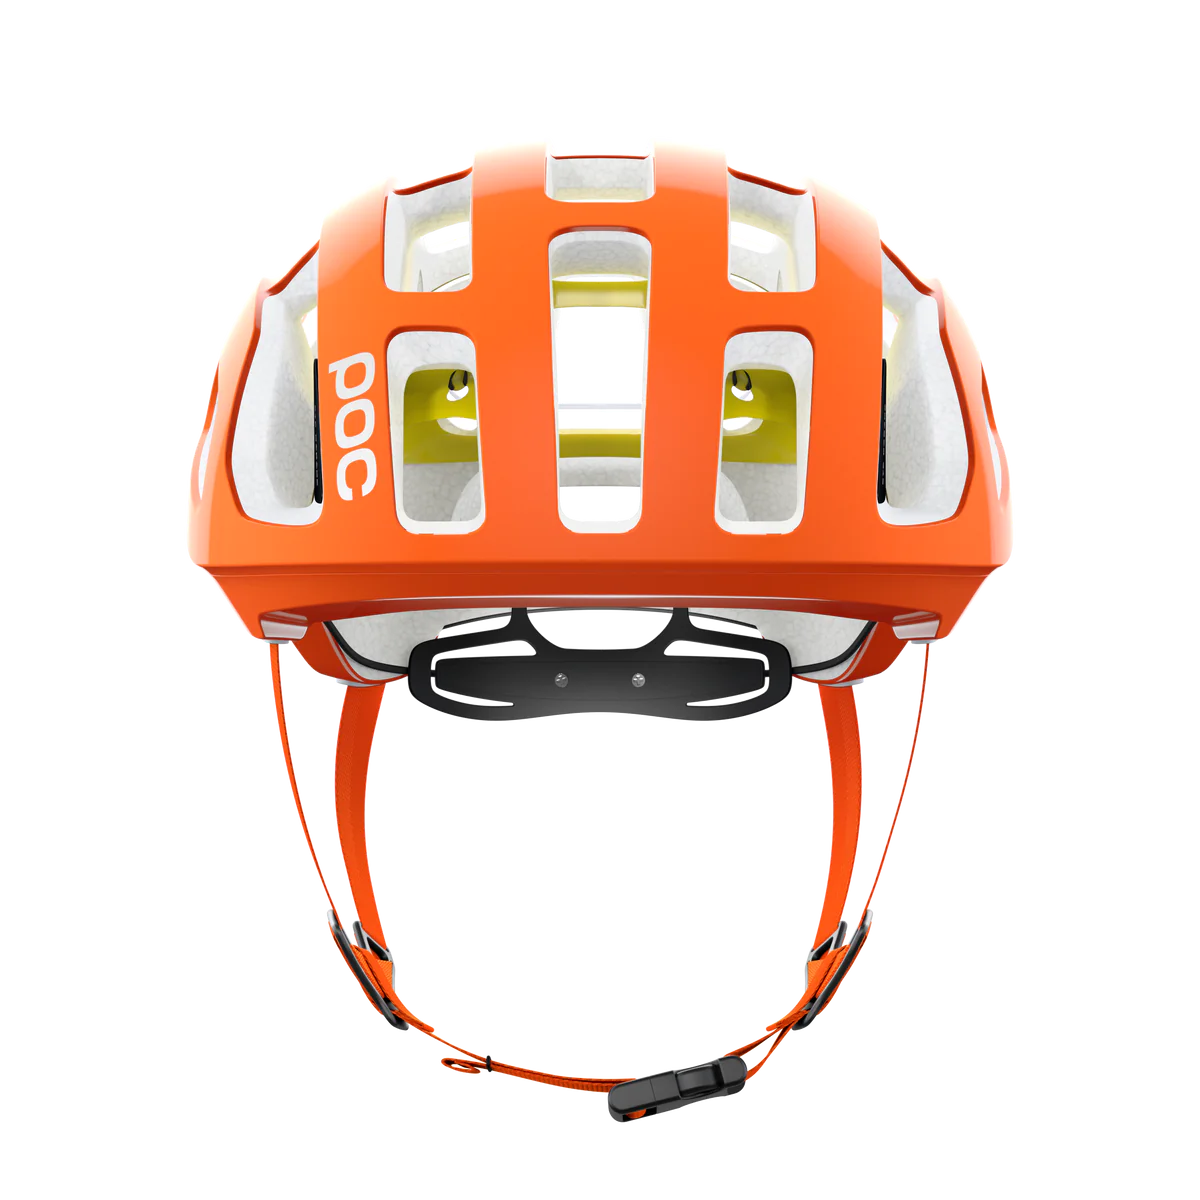 POC Octal MIPS Fluorescent Orange AVIP Helmet (AS/NZS)